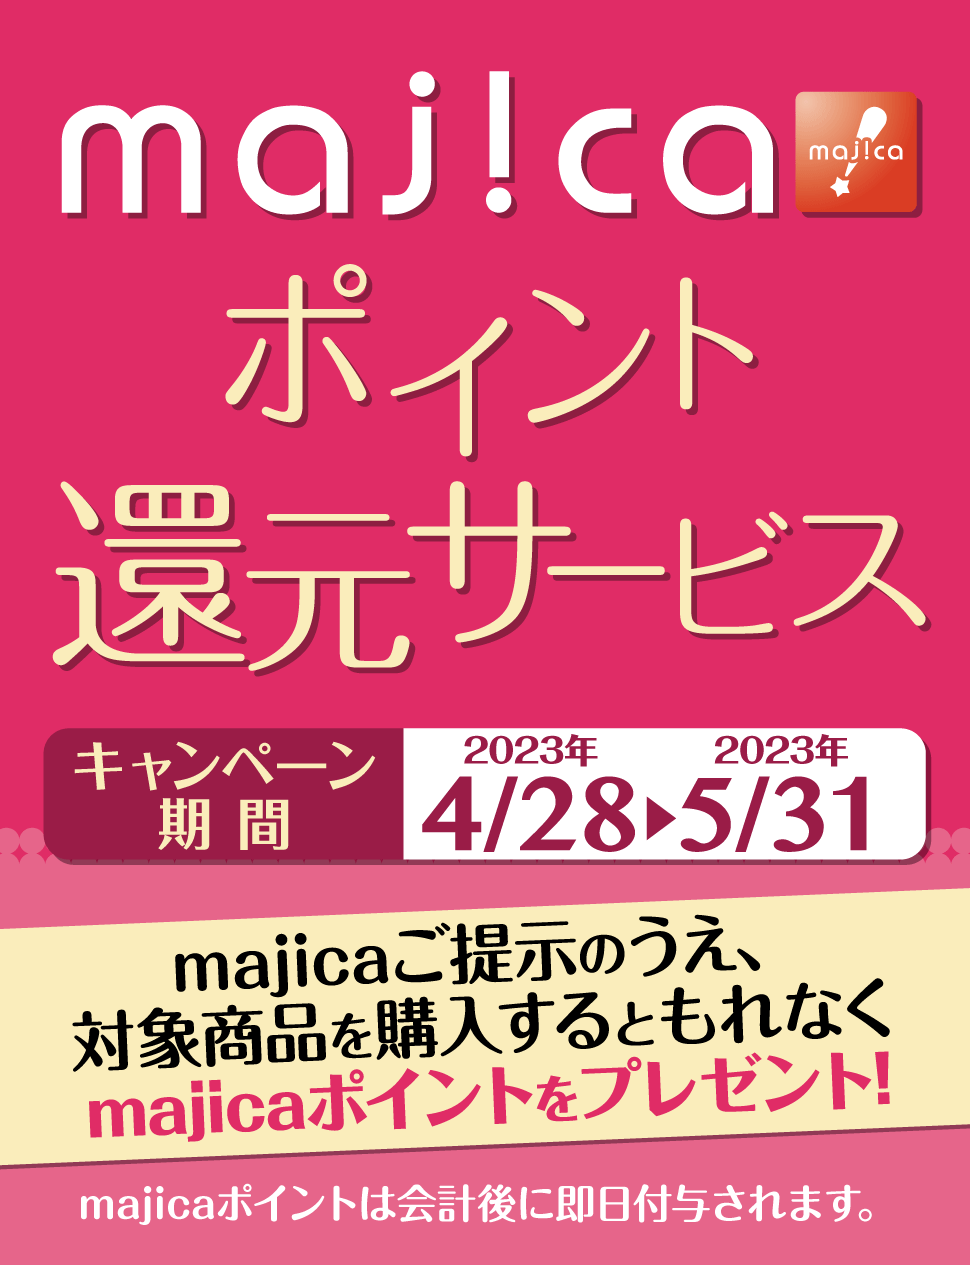 majicaポイント還元サービス「フレグランスキャンぺーン」